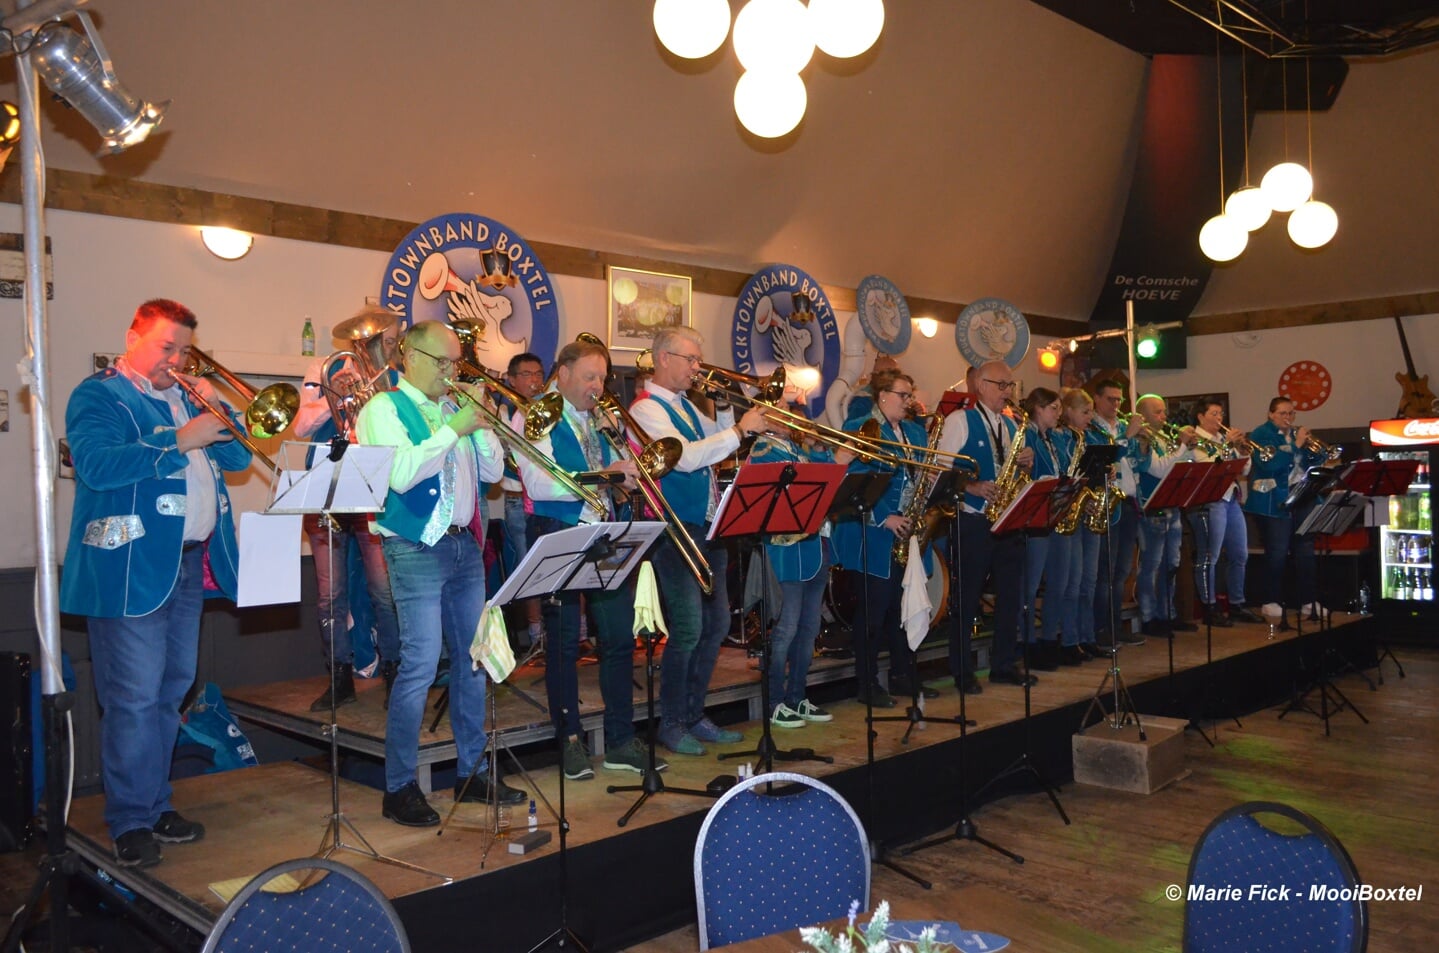 The Ducktownband bracht een sfeervolle en muzikale middag tijdens het Vette Oliebollenfestijn zondagmiddag in De Comsche Hoeve.